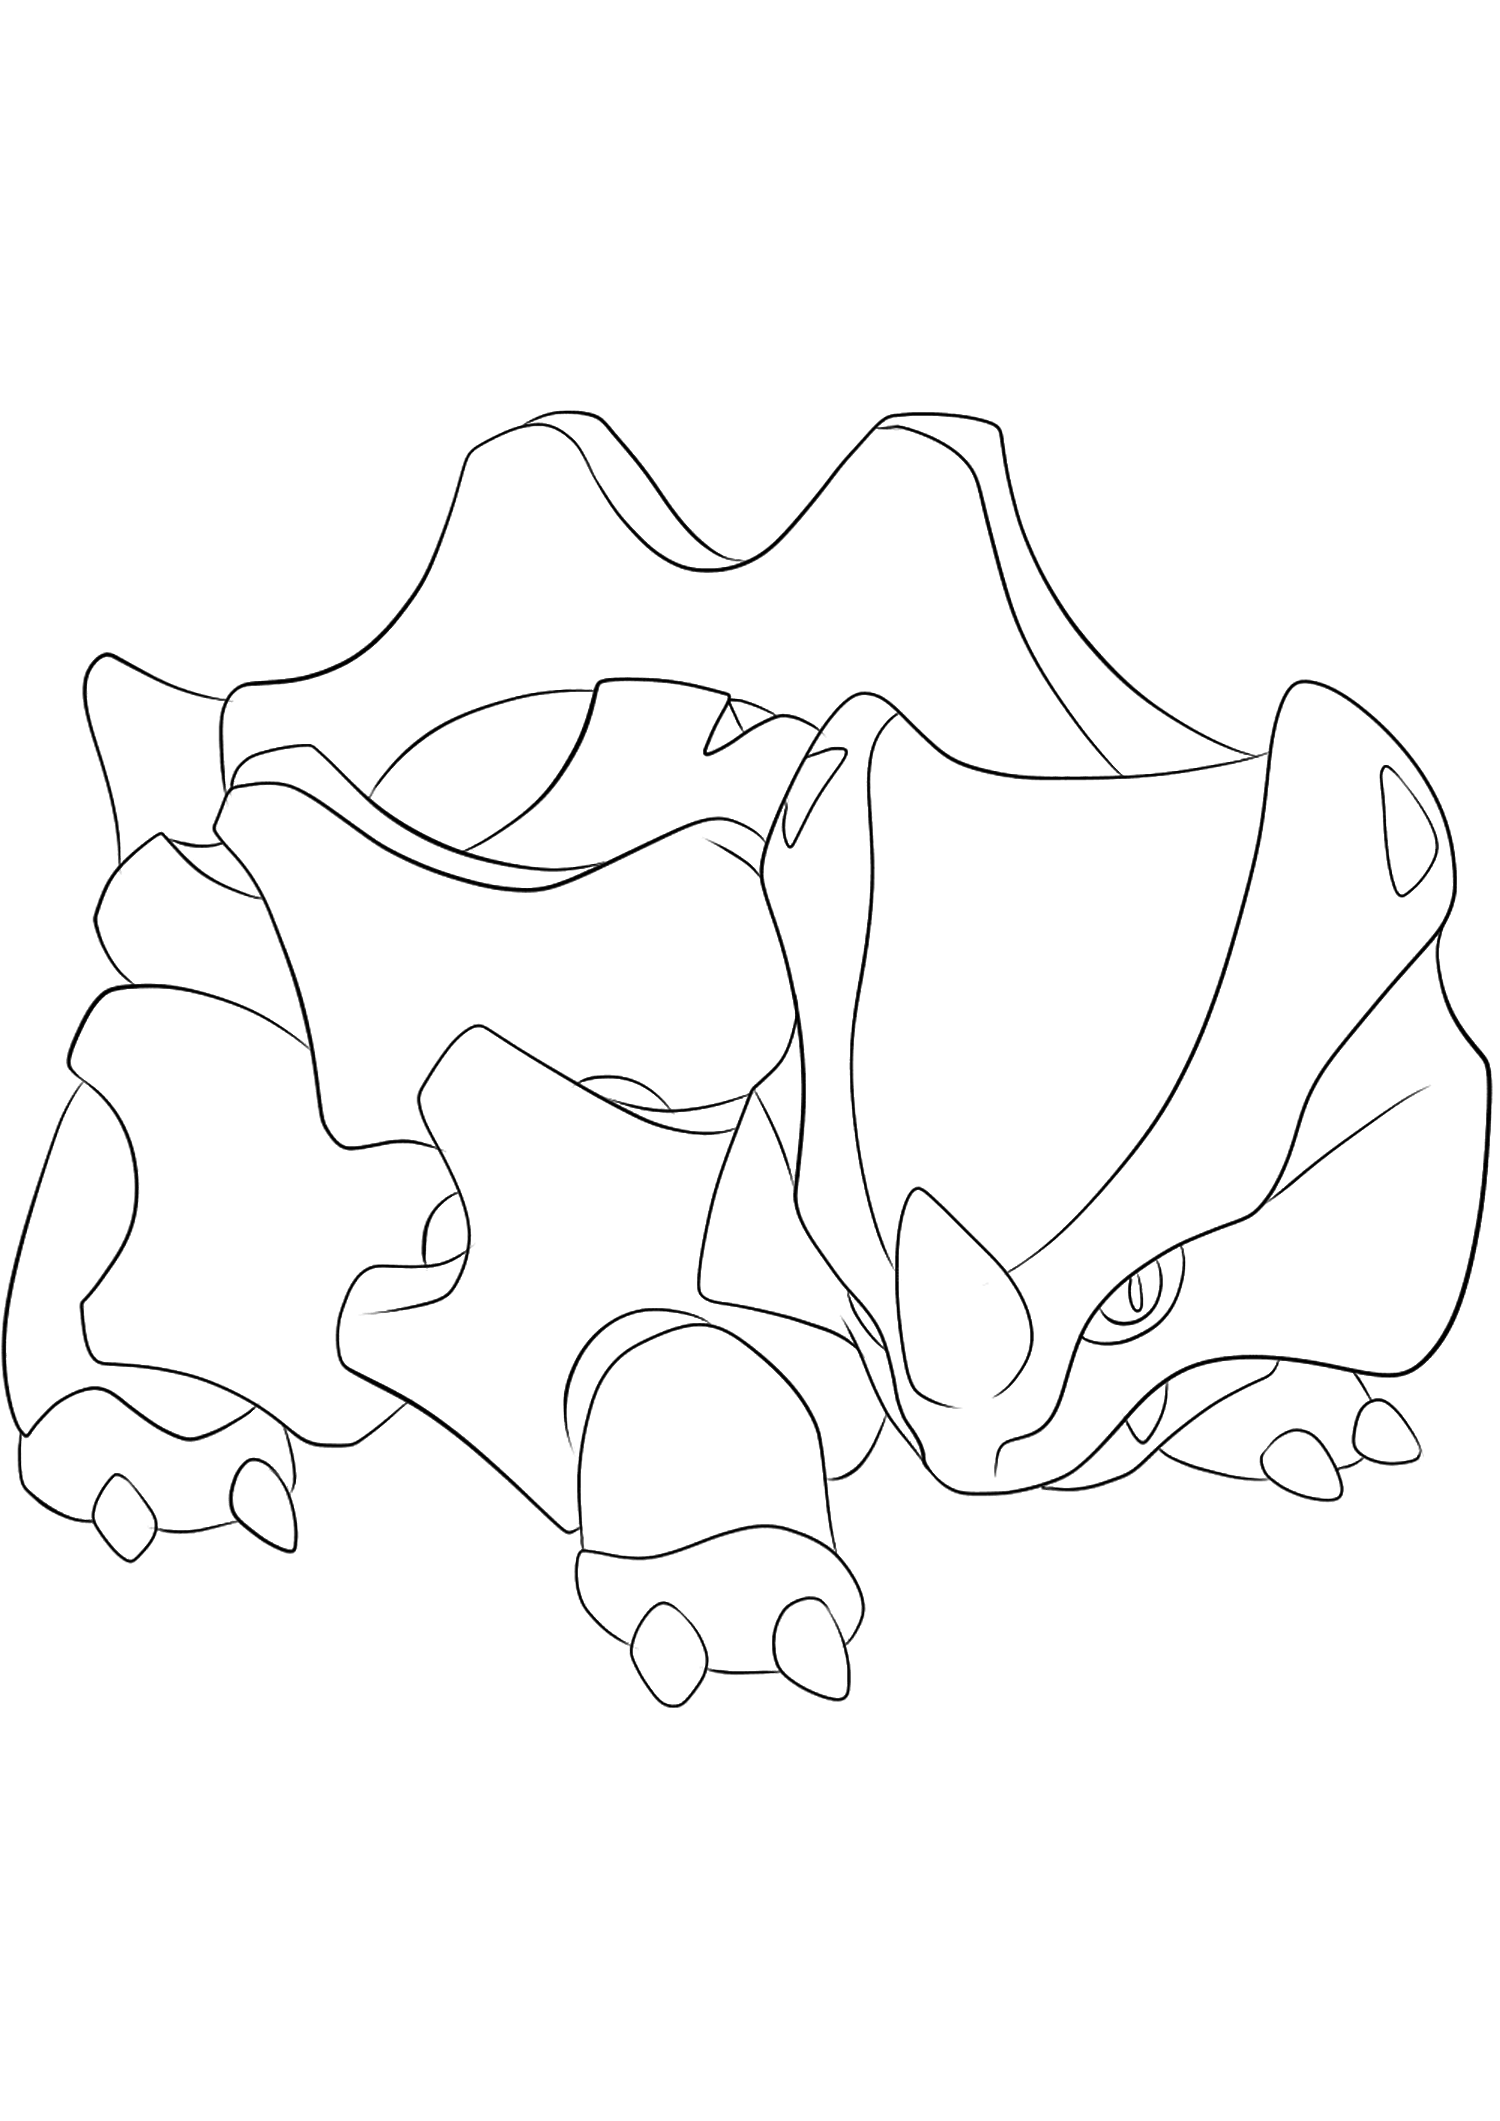 <b>Rhinocorne</b> (nº 111): Pokémon de la Generación I